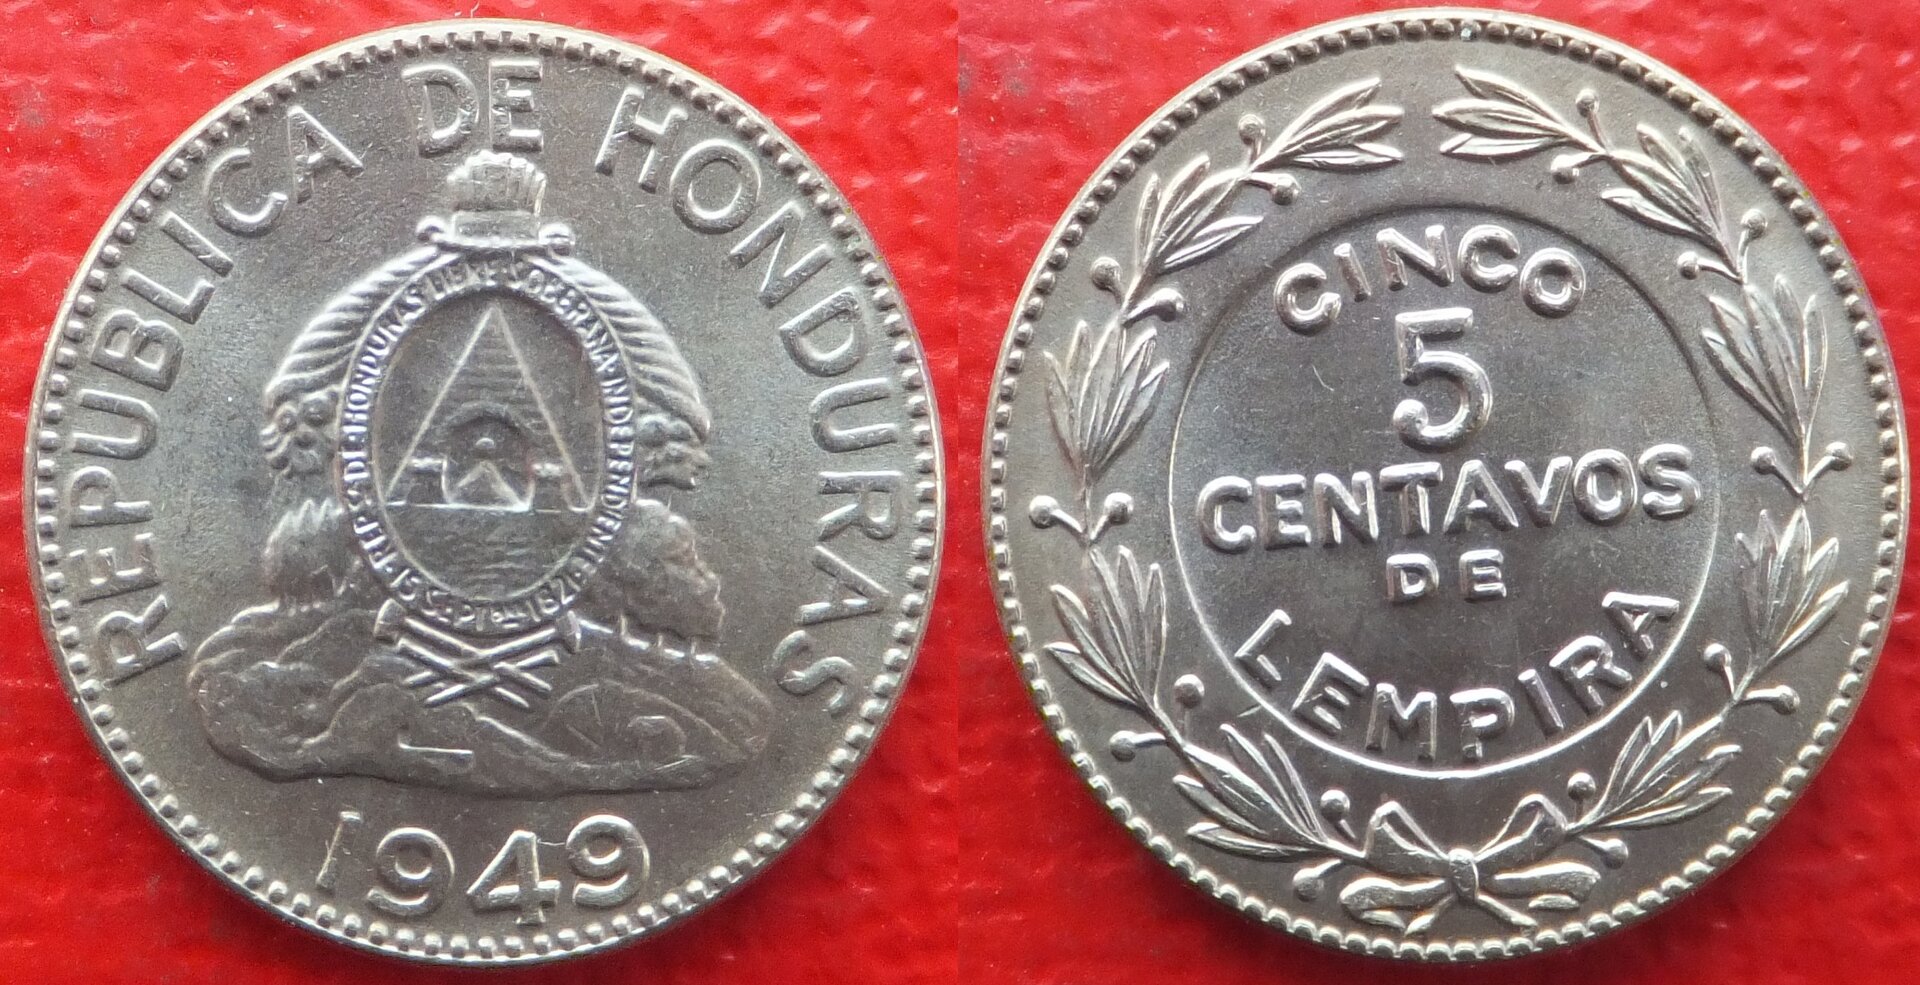 Honduras 5 centavos 1949 (3).jpg